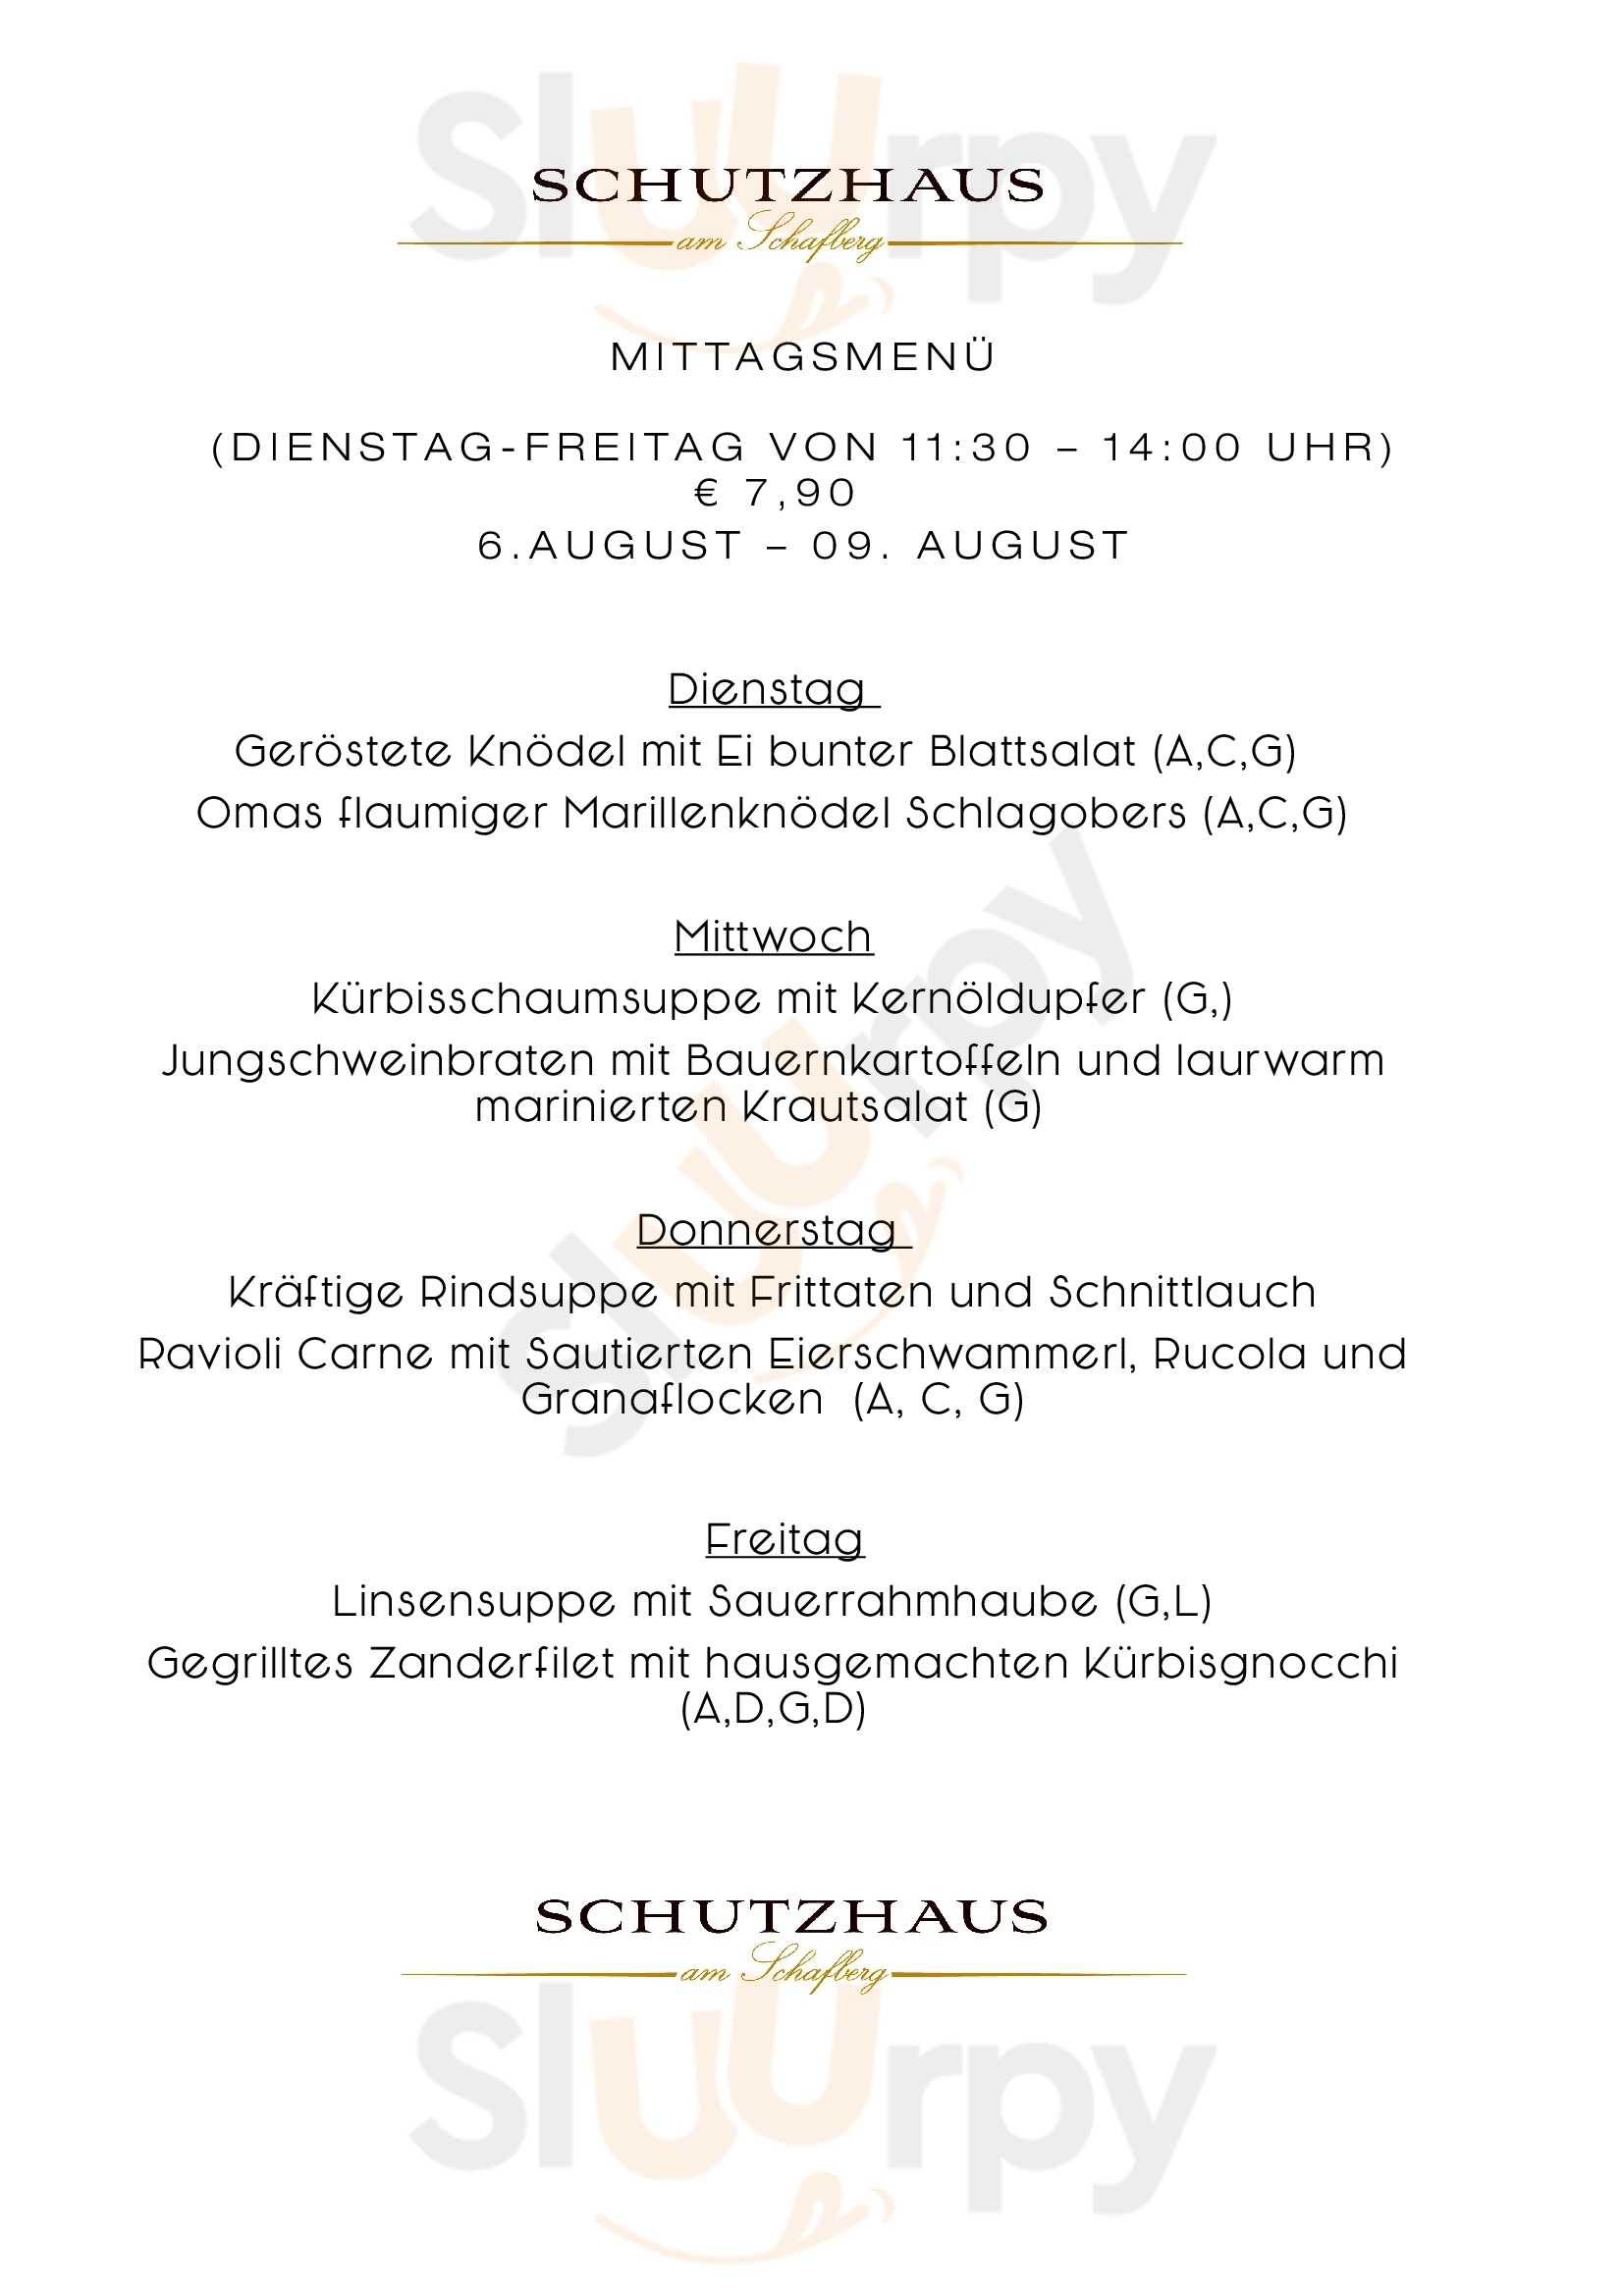 Schutzhaus Am Schafberg Wien Menu - 1